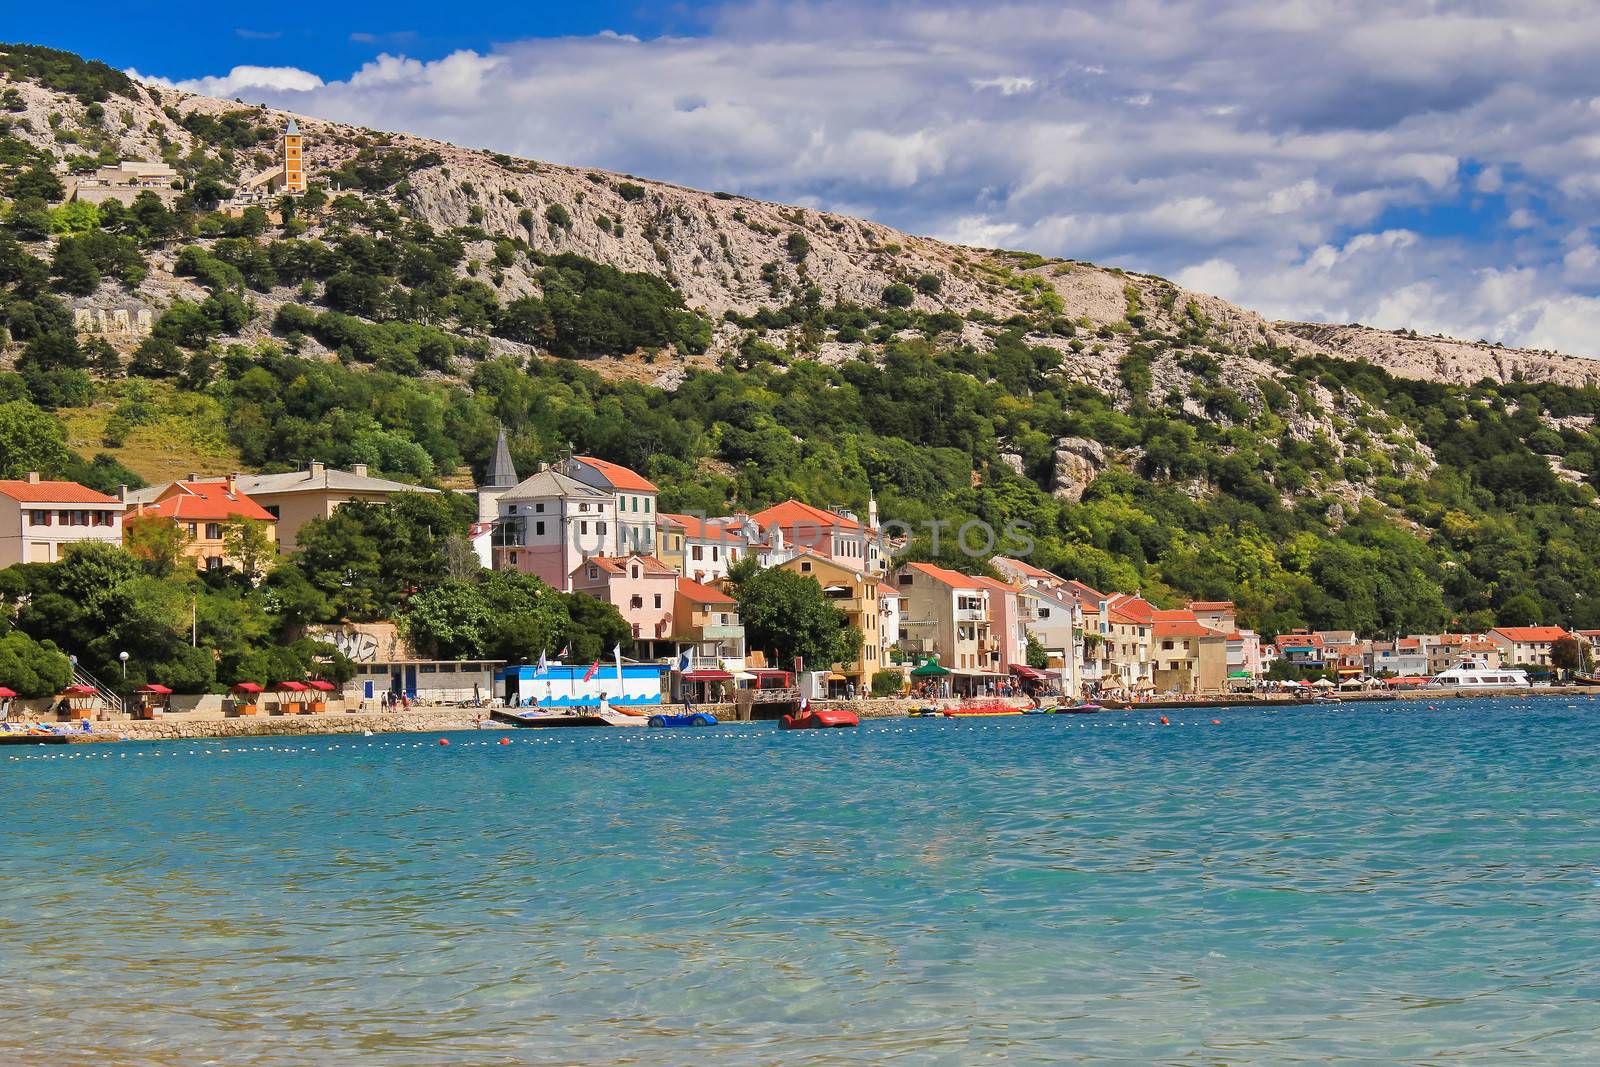 Adriatic town of Baska waterfront by xbrchx